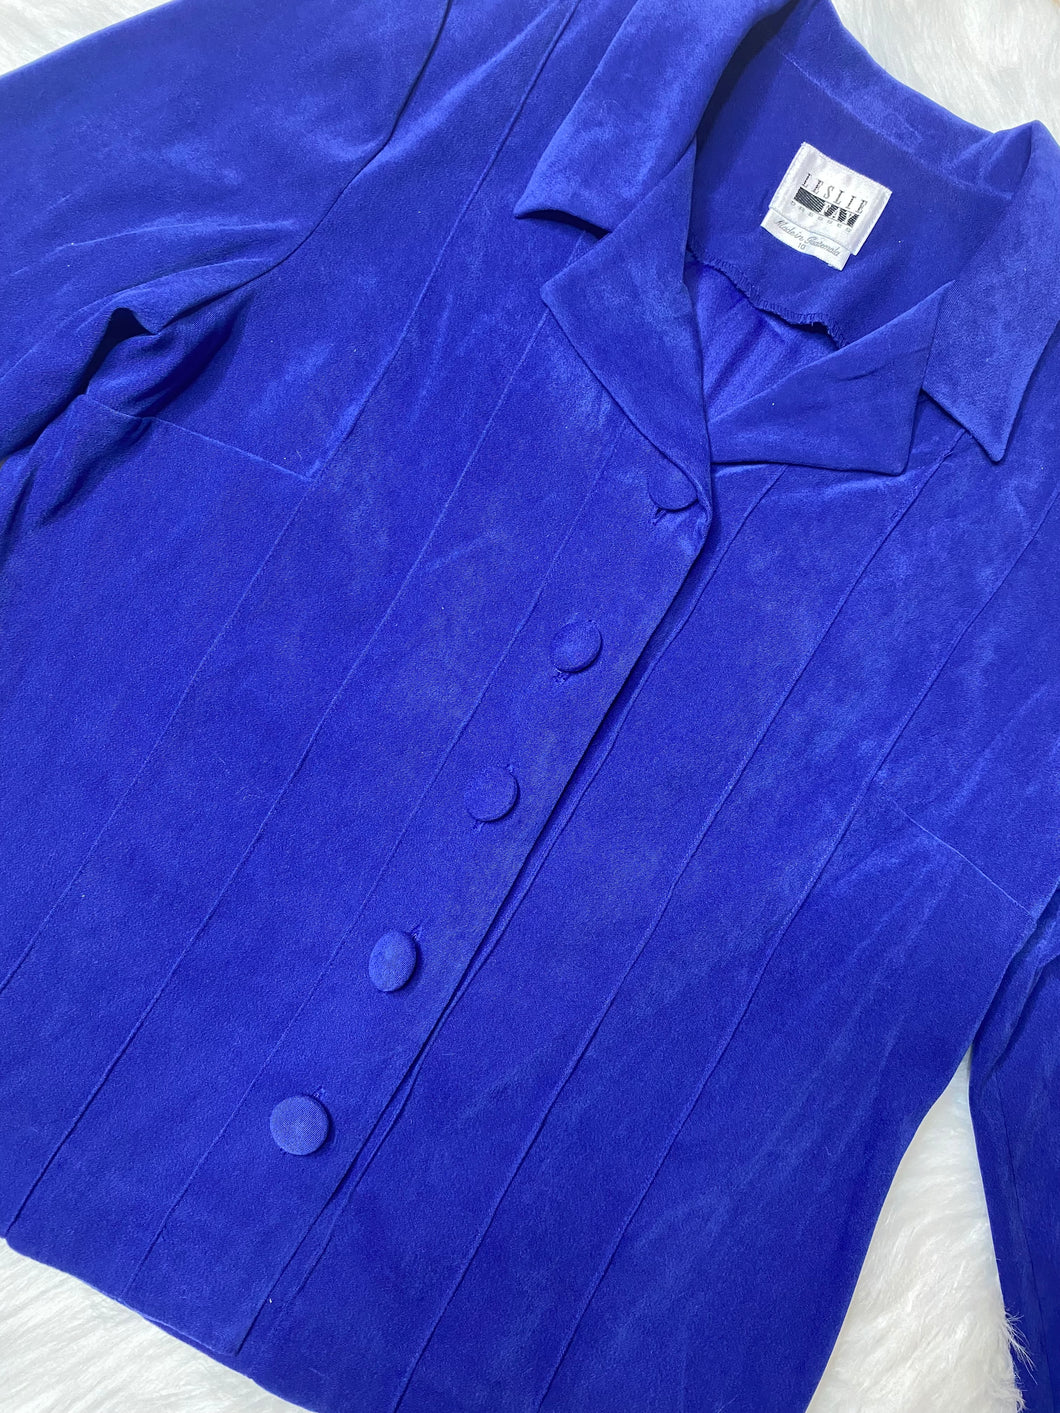 Leslie Fay Dresses Royal Blue Vintage Blazer (US10)